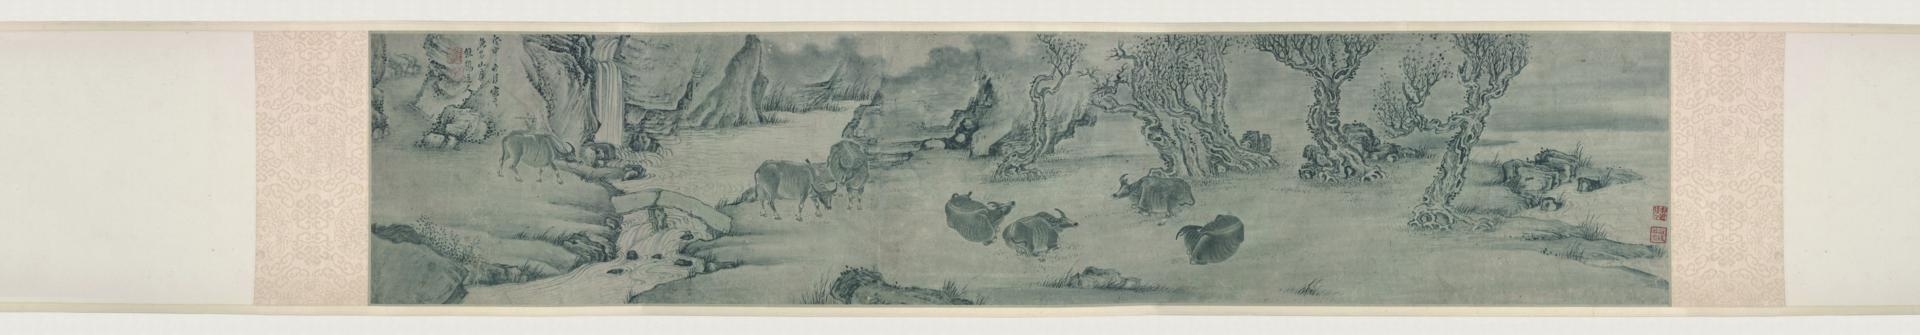 清 张穆 牧牛图卷纸本23.3 x 113 cm